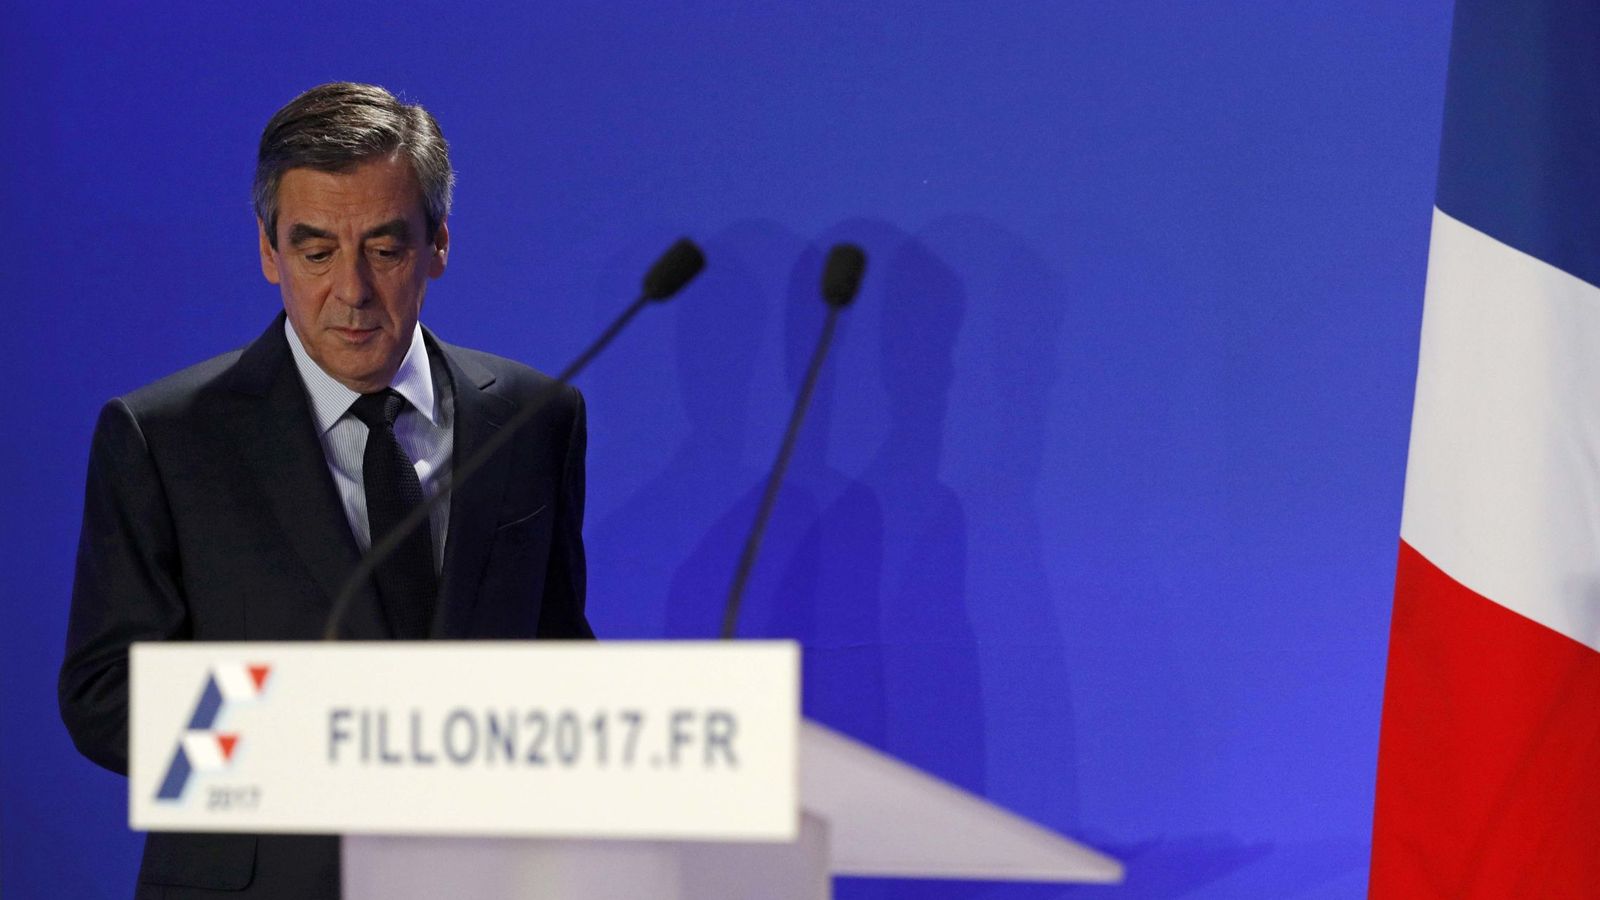 Foto: Francois Fillon durante la rueda de prensa para aclarar el 'Penelopegate', en París (Reuters). 